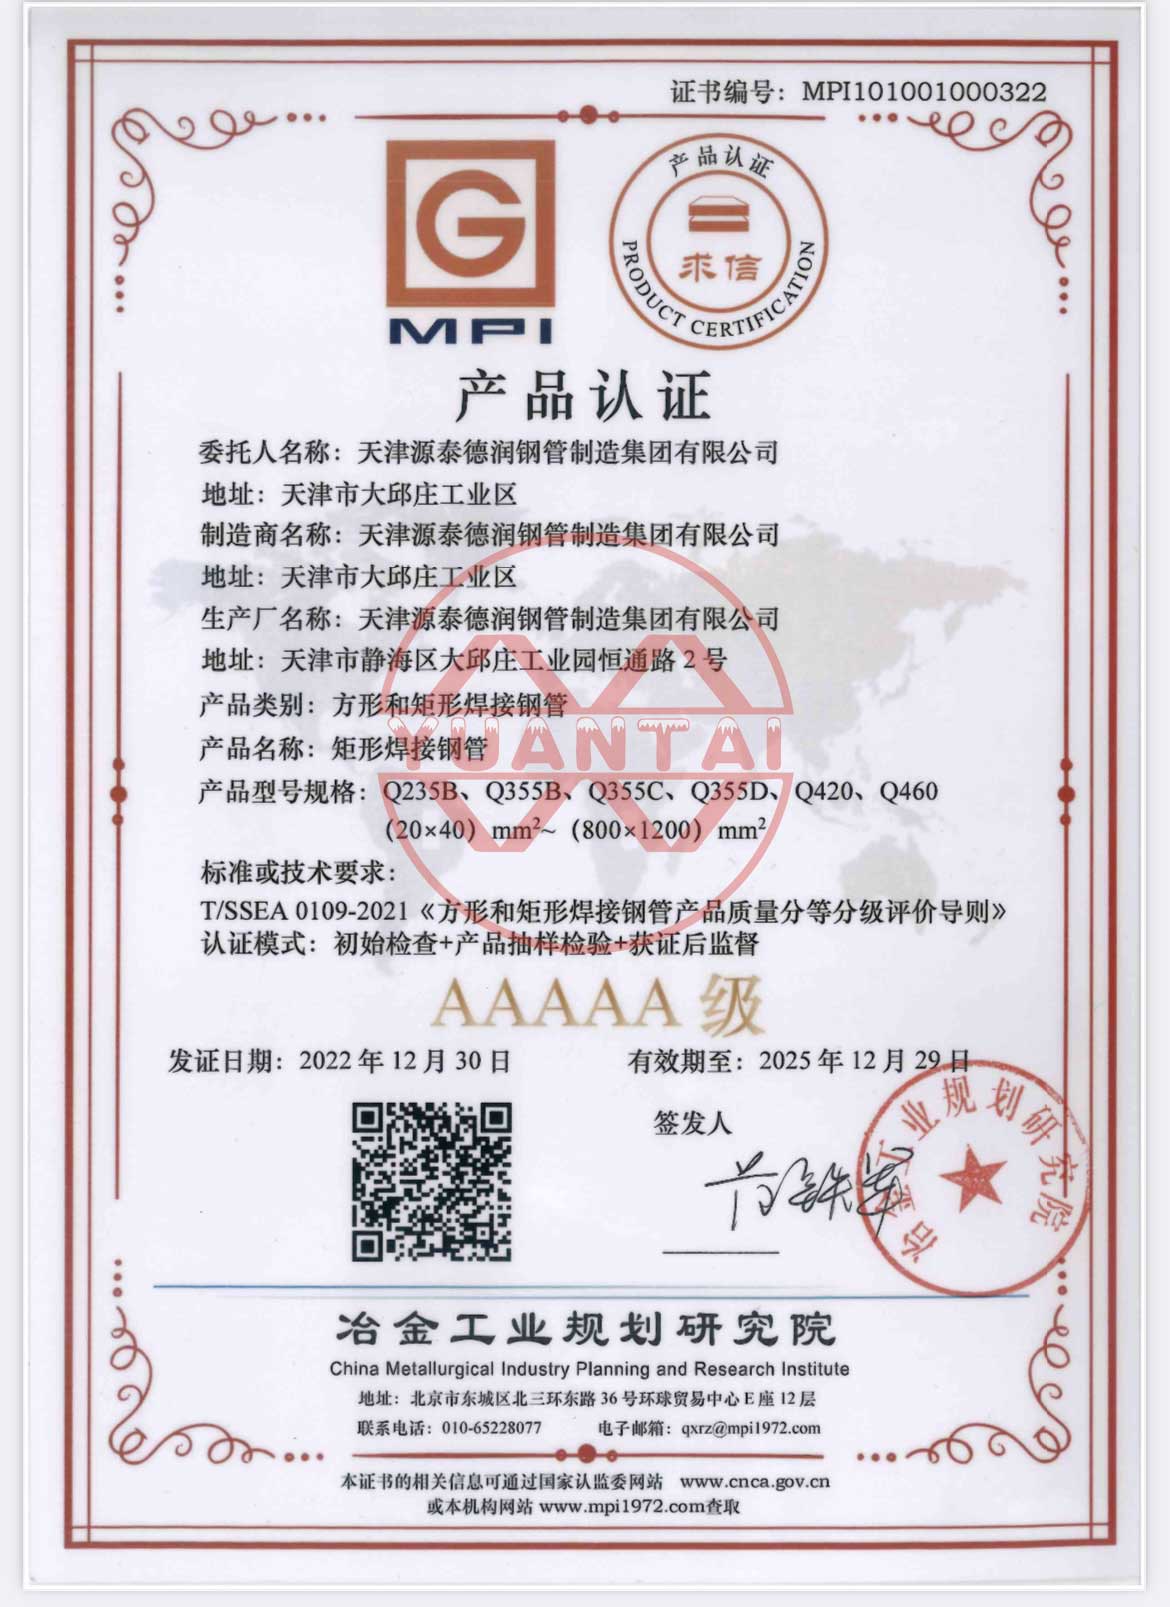 Kvadratne in pravokotne varjene jeklene cevi skupine Tianjin Yuantai Derun so prejele certifikat AAAAA s strani Inštituta za načrtovanje metalurške industrije